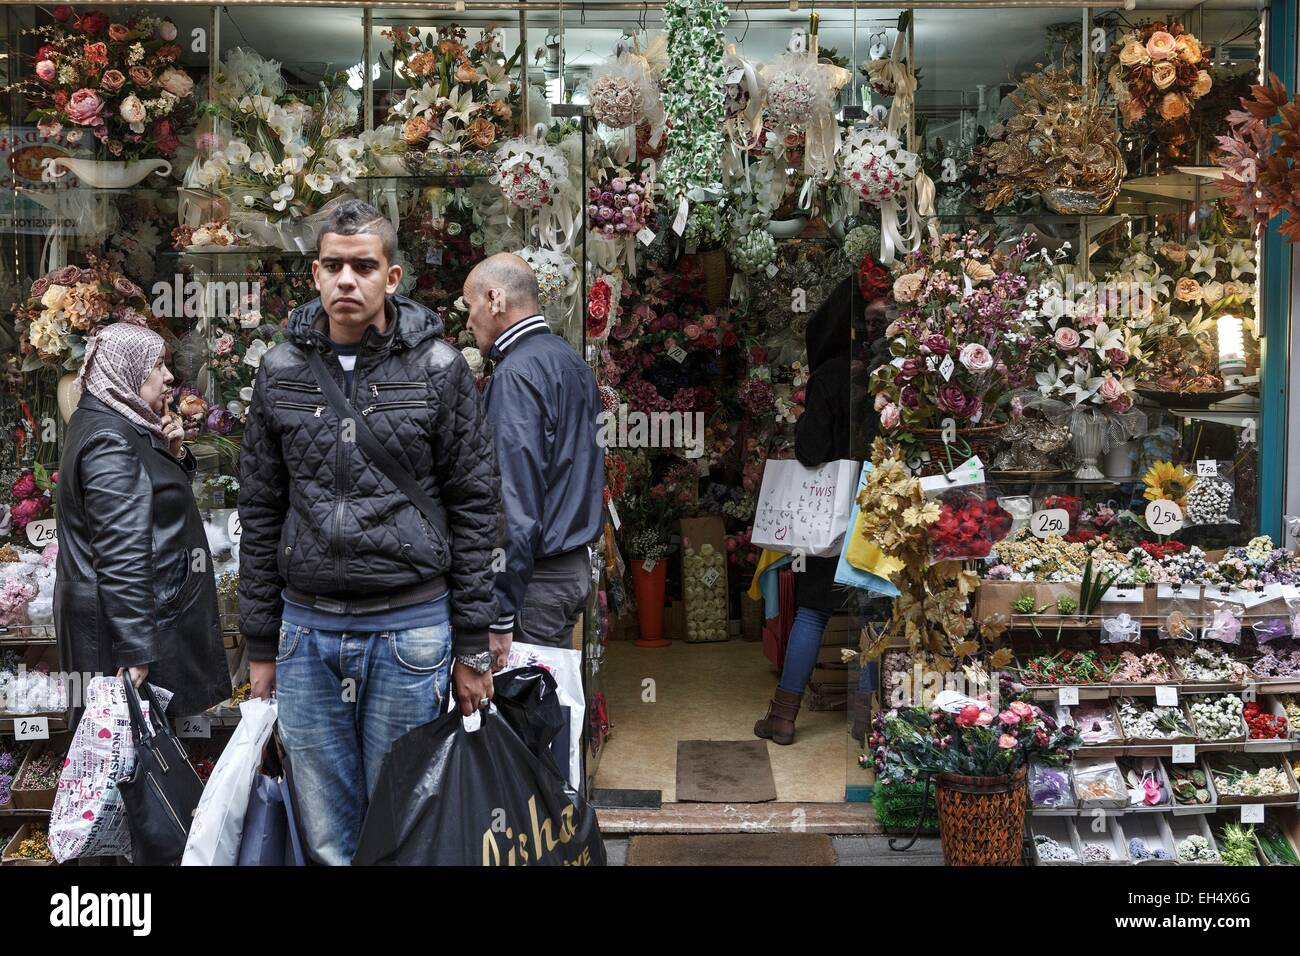 La Turquie, Istanbul, Mercan, clients dans un fleuriste Banque D'Images